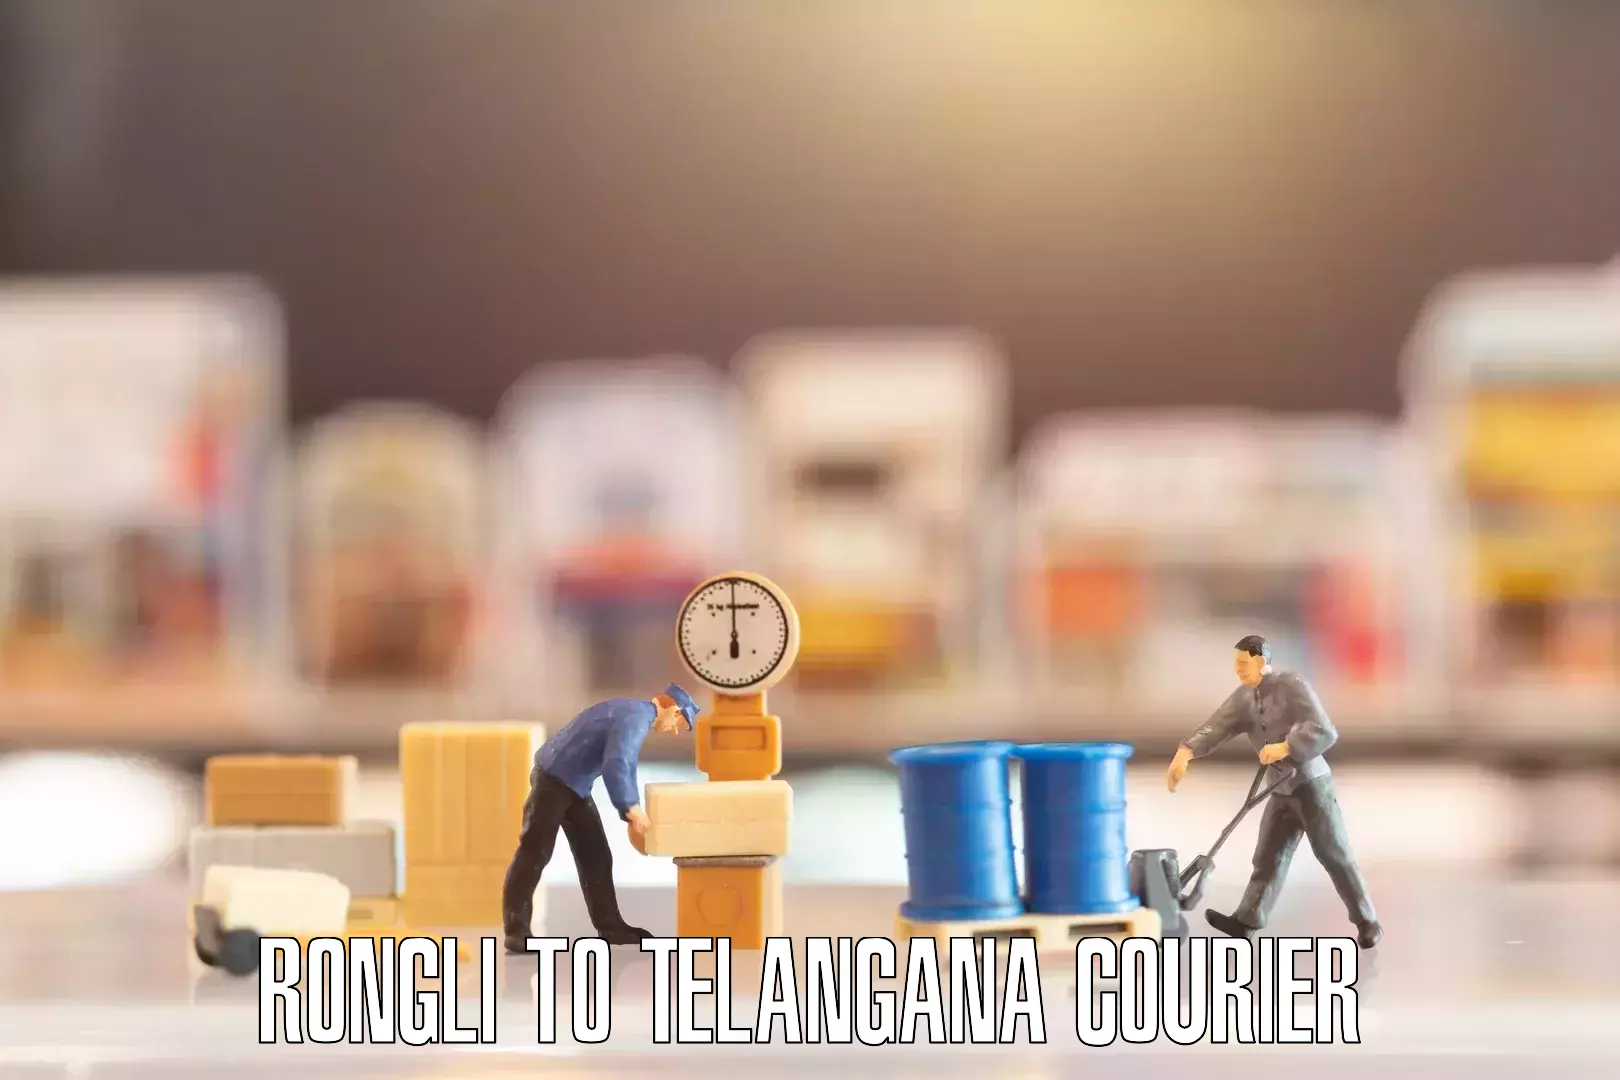 Furniture moving plans Rongli to Telangana